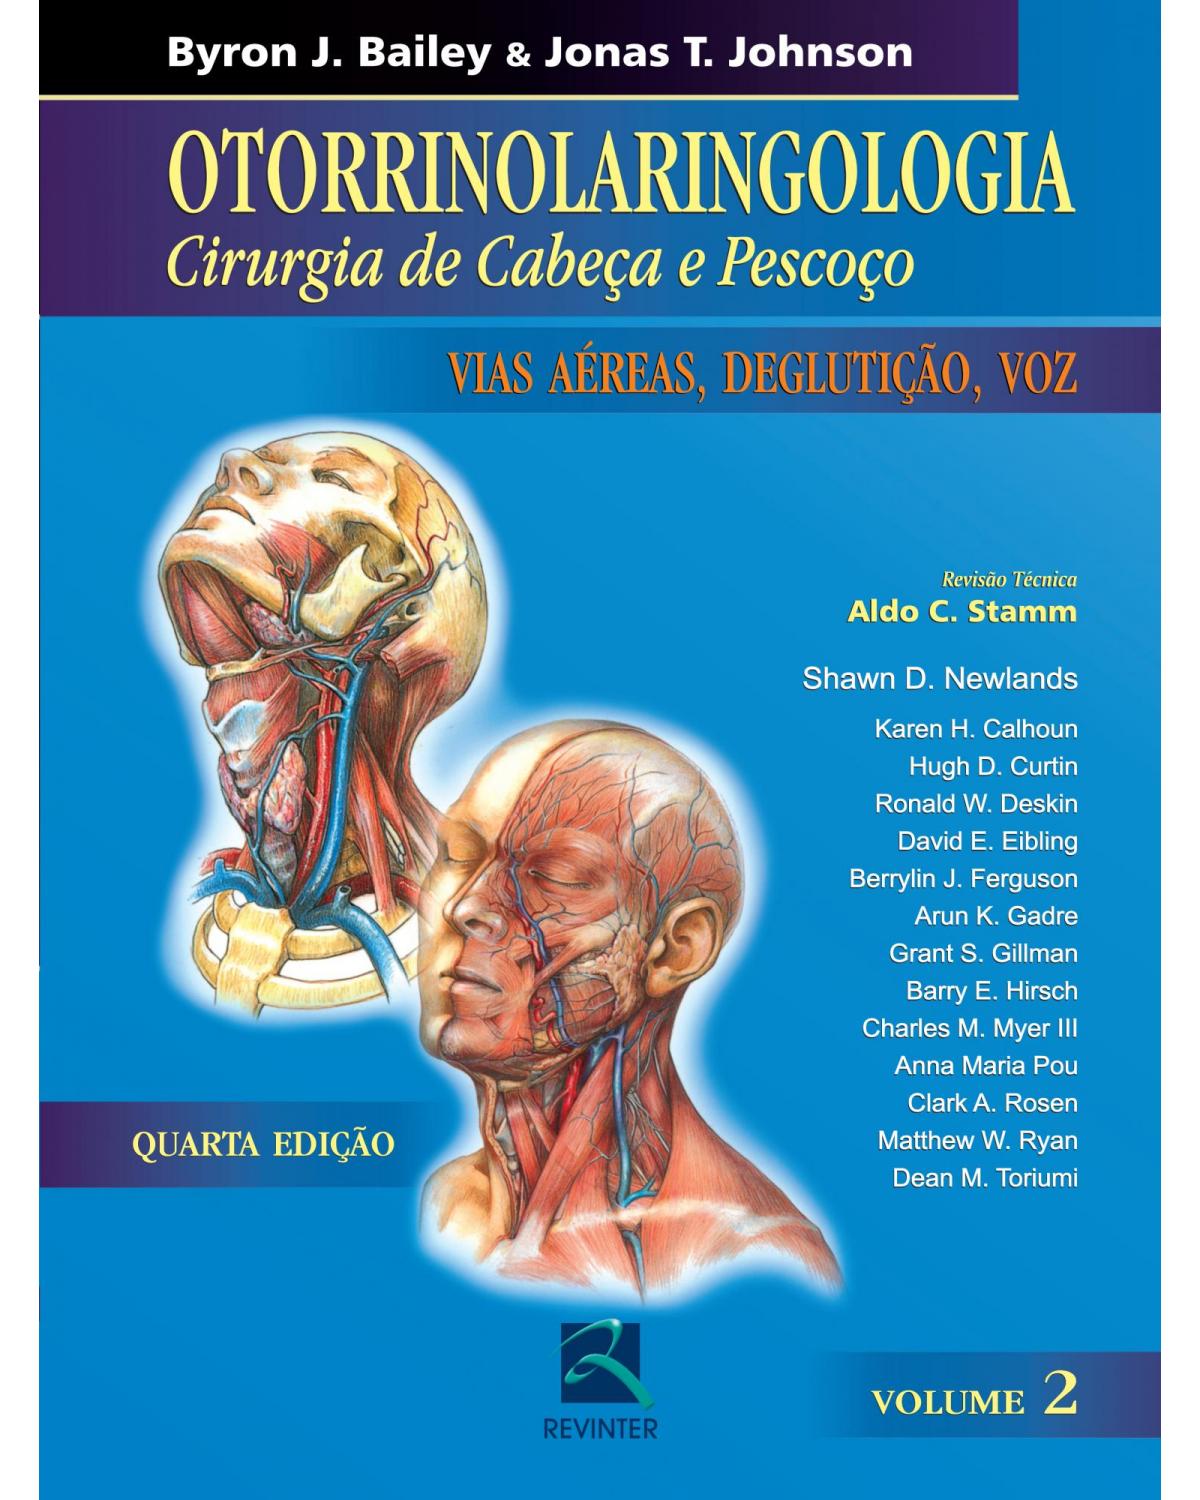 Otorrinolaringologia - Volume 2: cirurgia de cabeça e pescoço - Vias aéreas, deglutição, voz - 4ª Edição | 2010